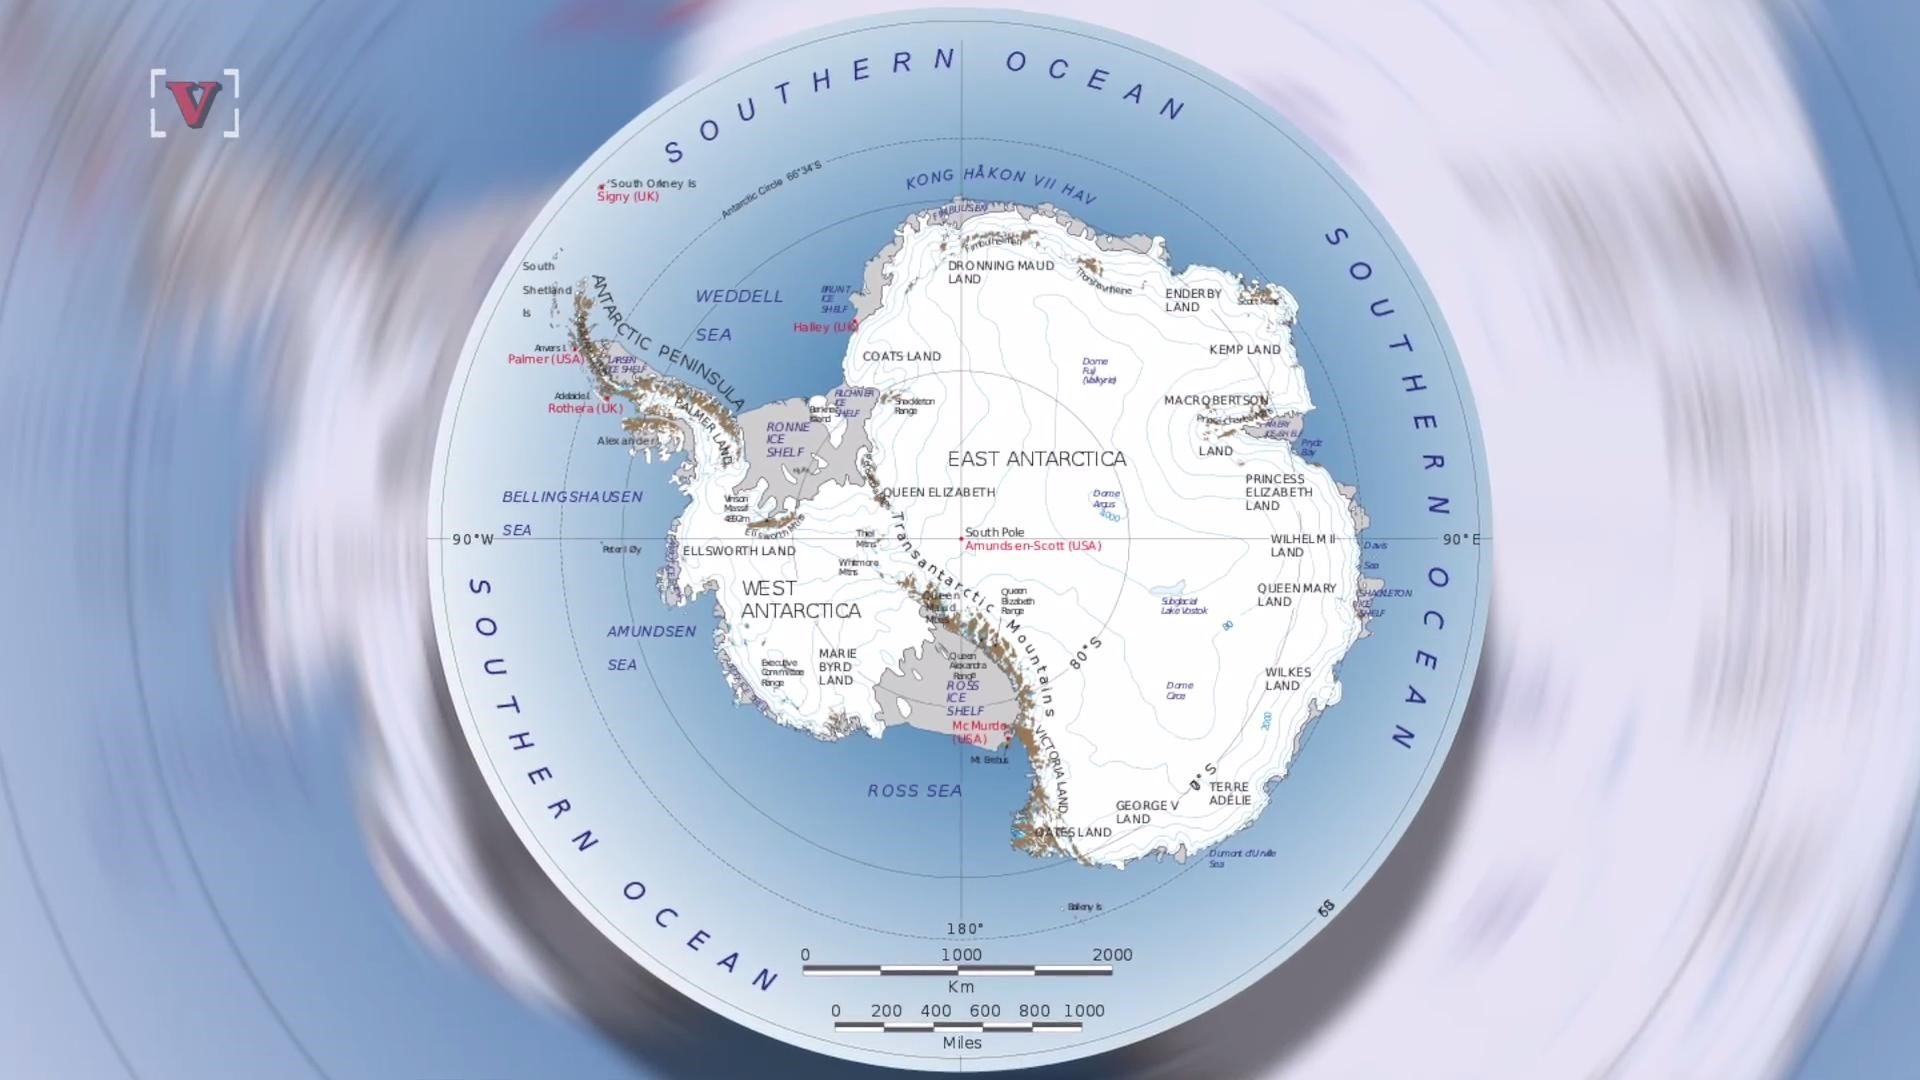 Антарктида омывается водами. Земля Уилкса на карте Антарктиды. Антарктида на карте. Шельфовый ледник Беллинсгаузена.